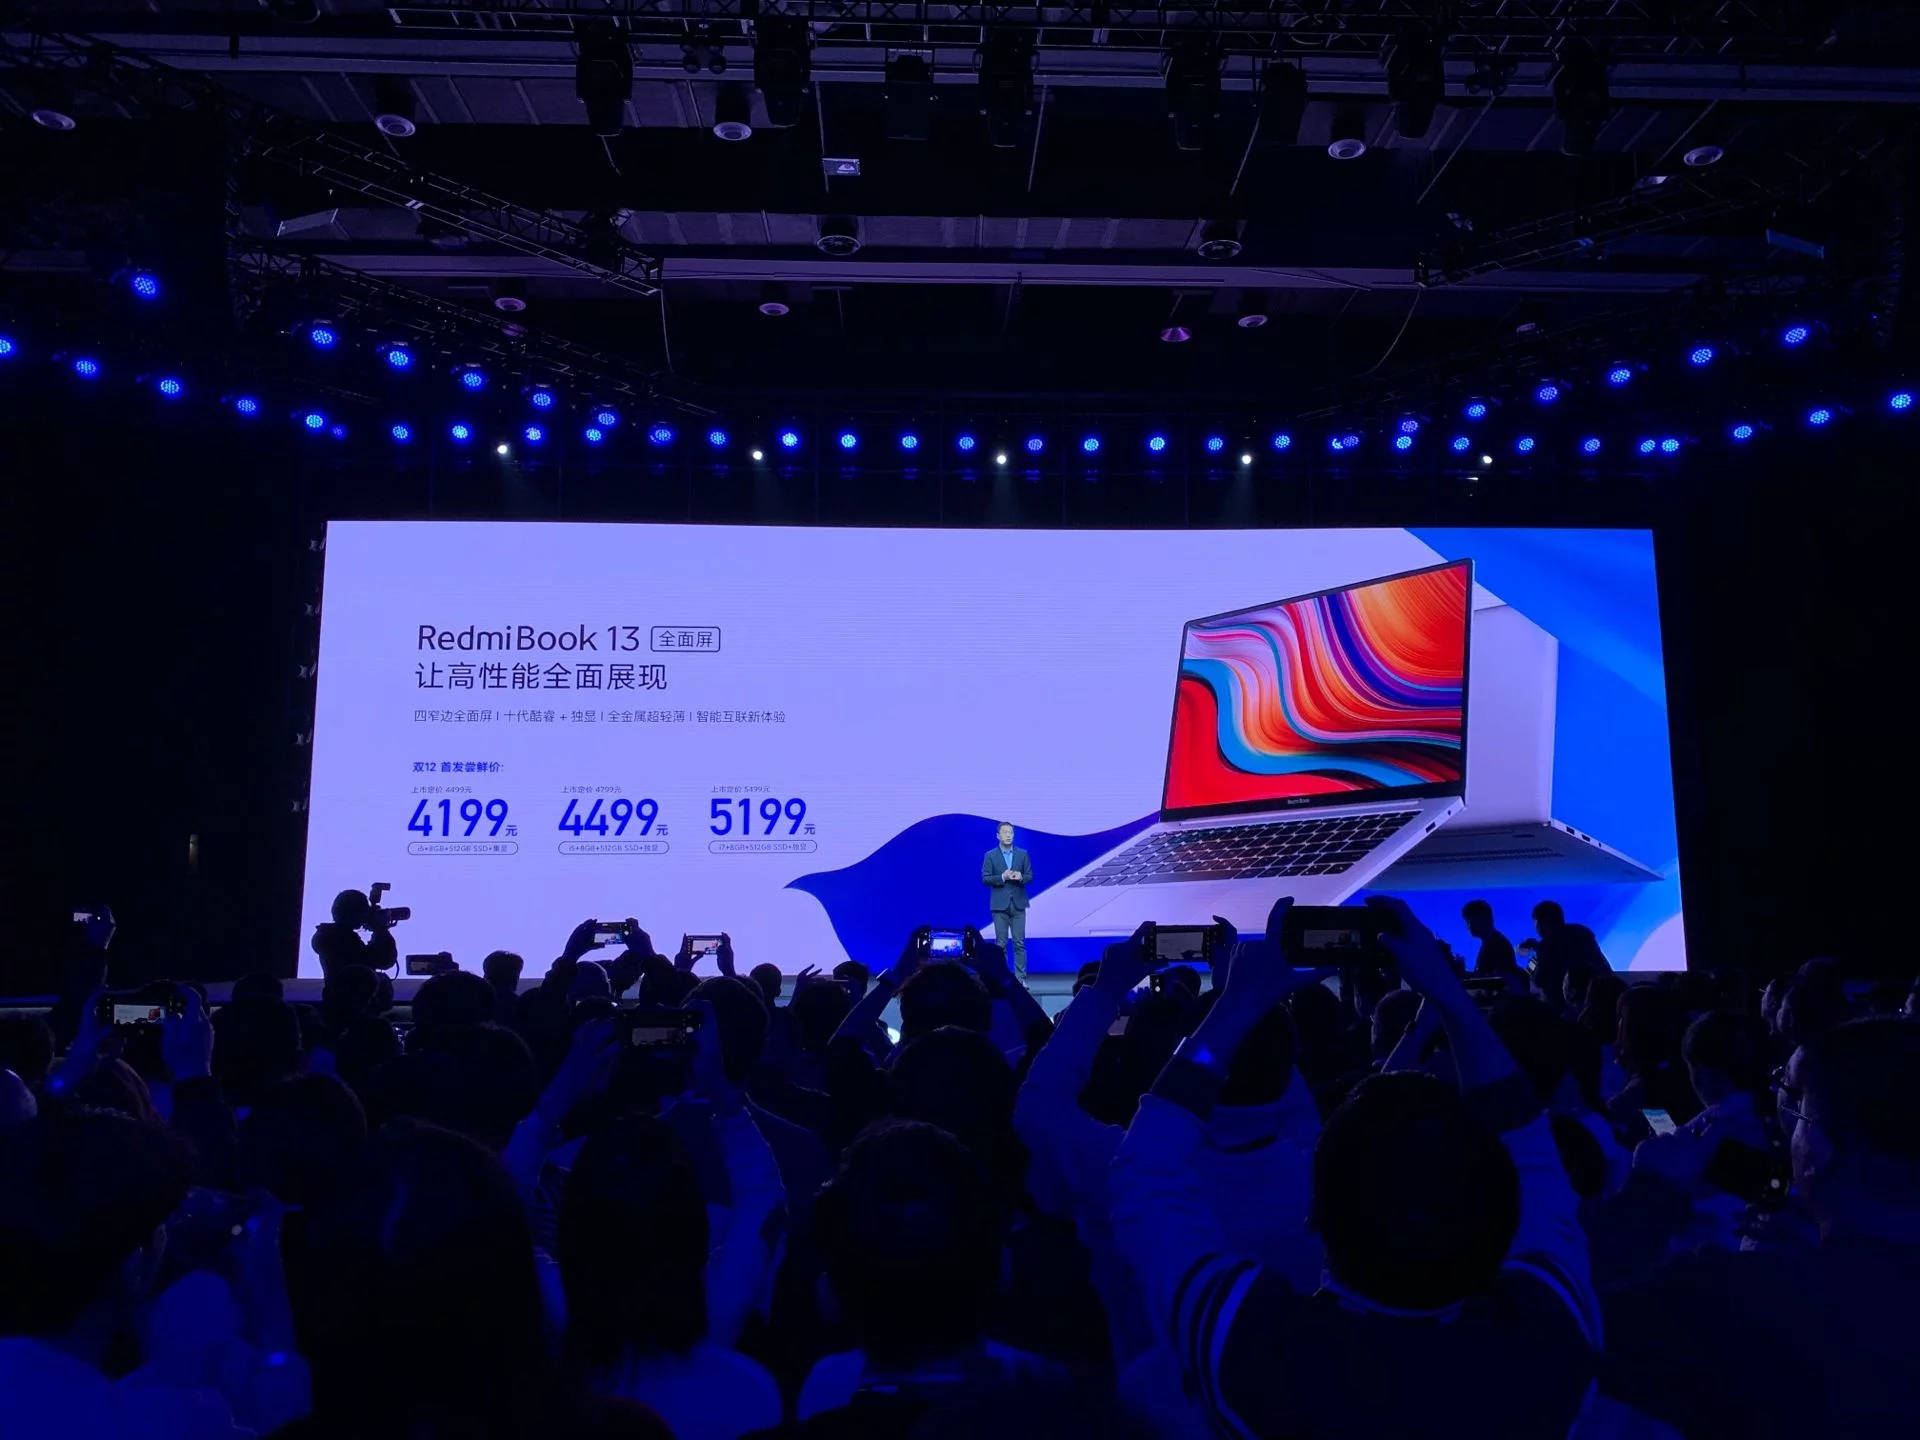 premiera RedmiBook 13 cena laptop Redmi Xiaomi specyfikacja techniczna opinie gdzie kupić najtaniej w Polsce